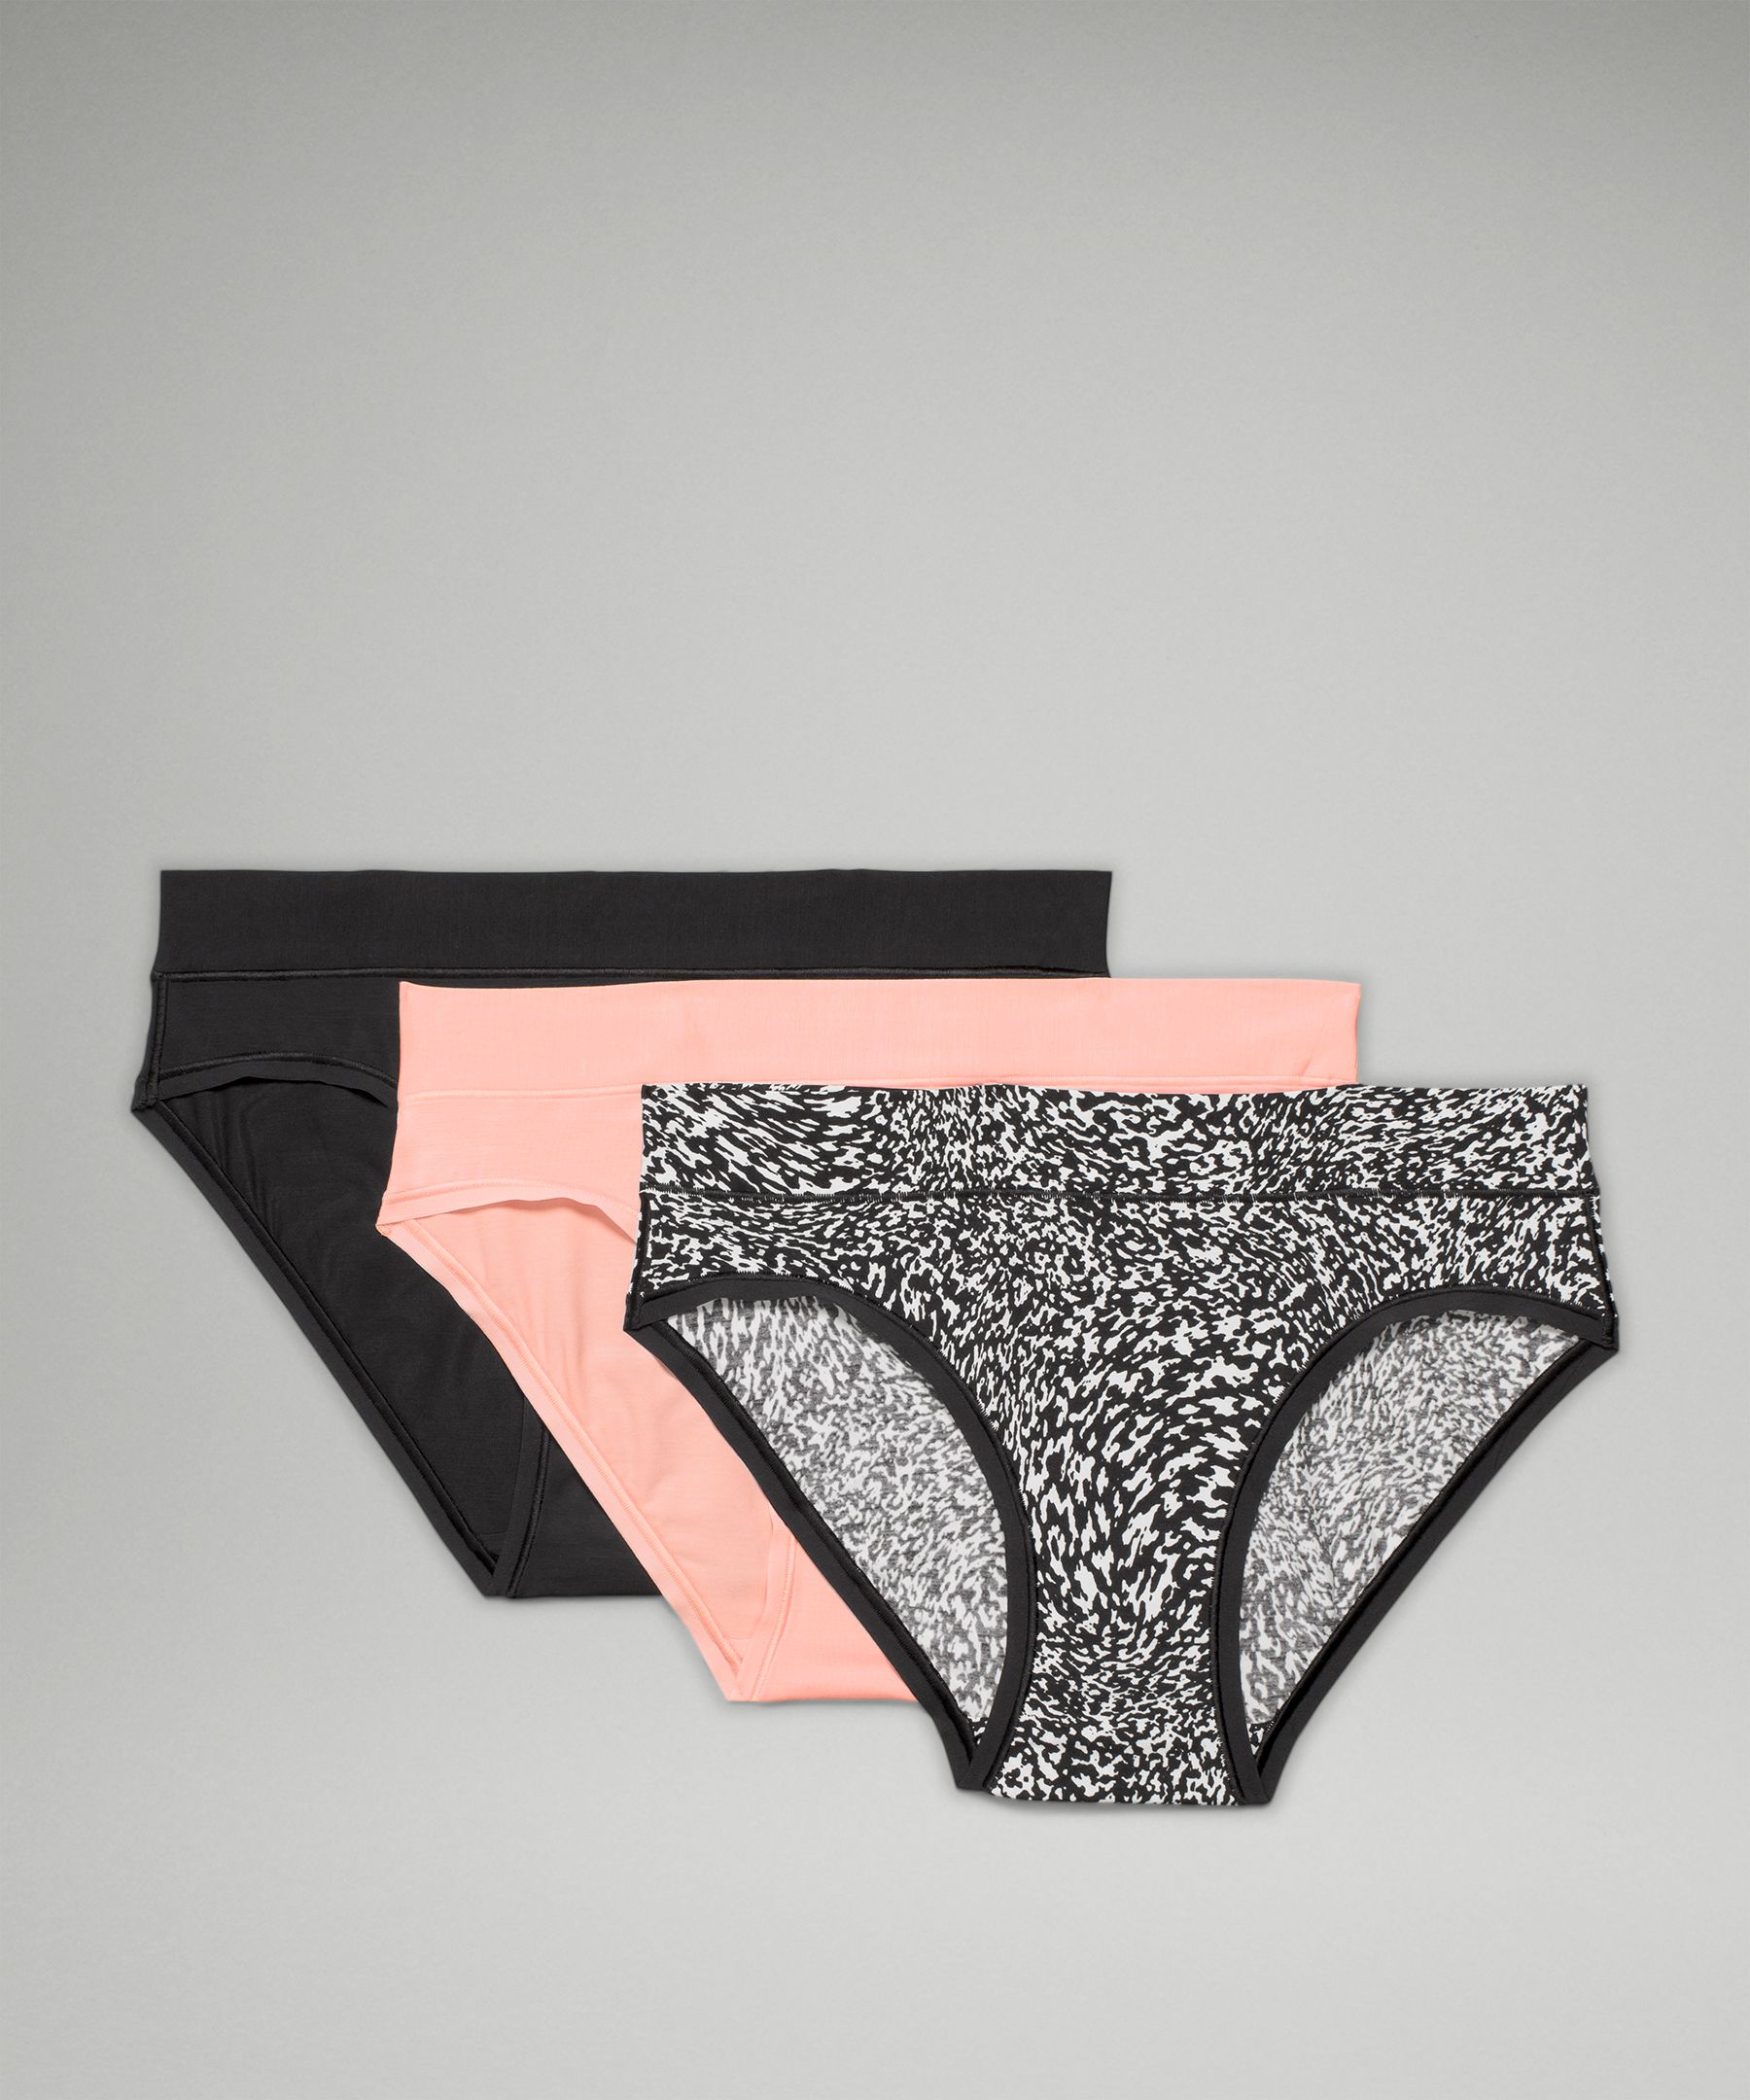 Lululemon Underease Mid-rise Bikini Underwear 3 Pack In Black/dew Pink/warped Grain Alpine White Black